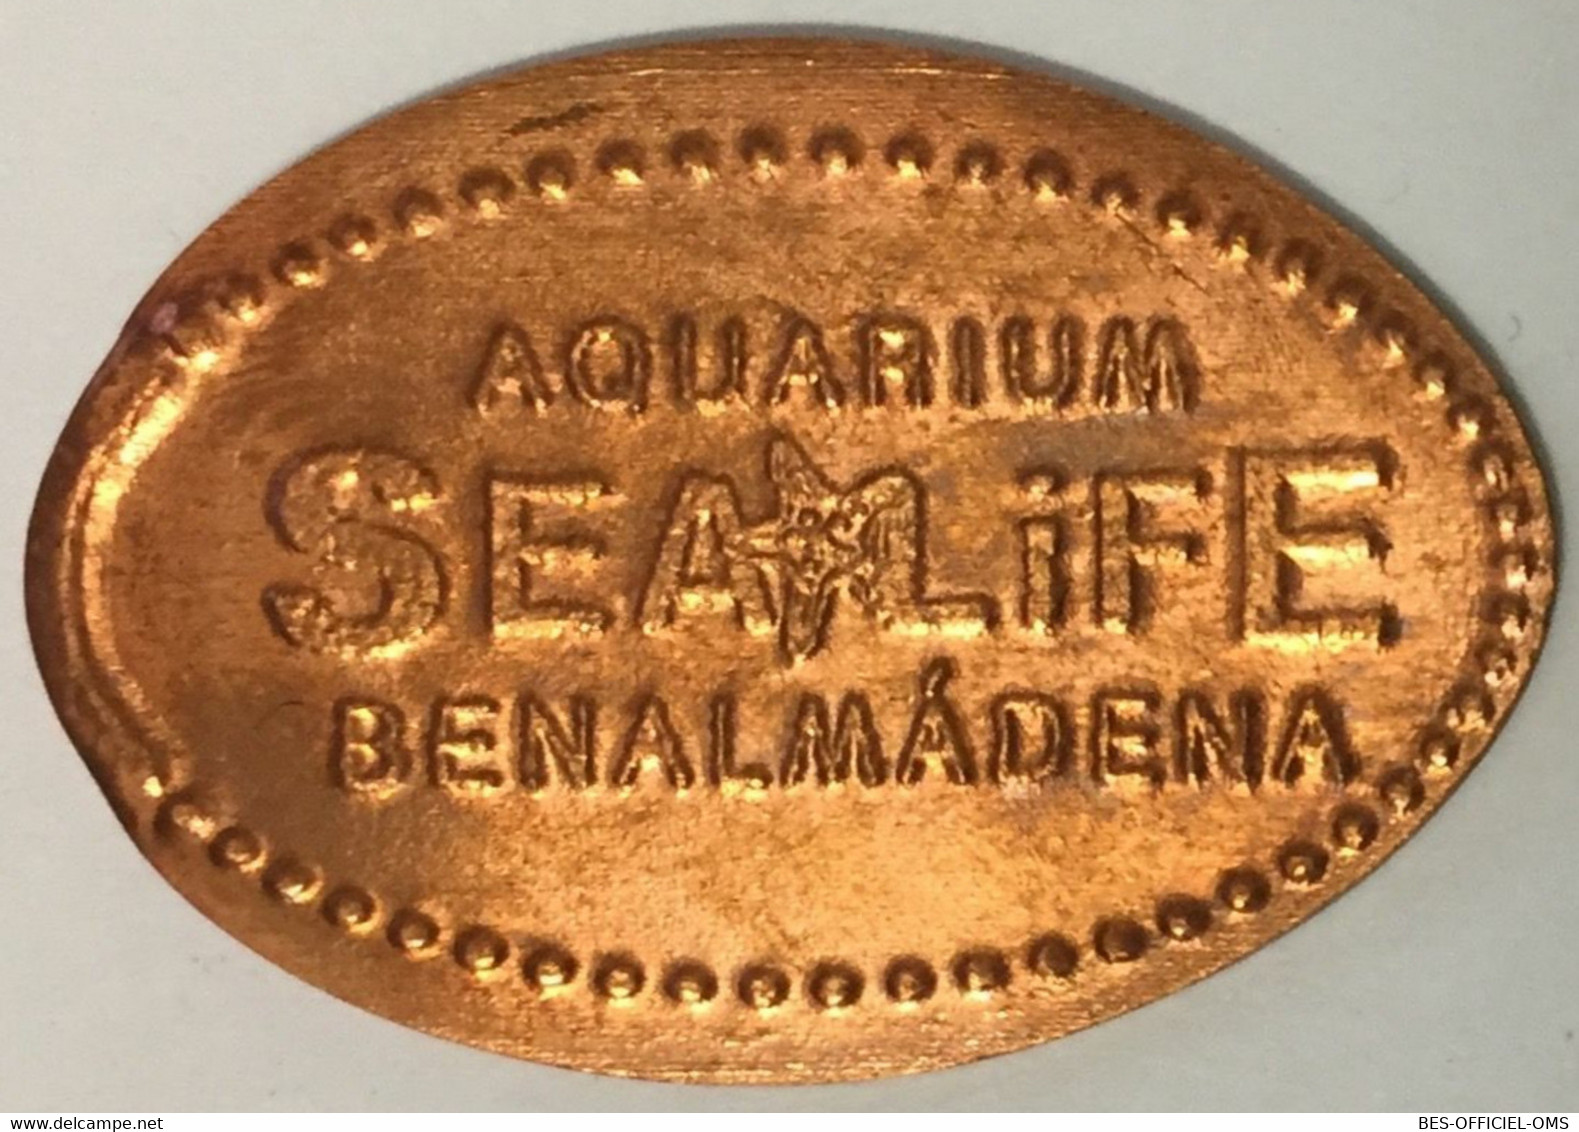 ESPAGNE AQUARIUM SEA LIFE BENALMÀDENA PIÈCE ÉCRASÉE ELONGATED COIN MEDAILLE TOURISTIQUE MEDALS TOKENS PIÈCE MONNAIE - Pièces écrasées (Elongated Coins)